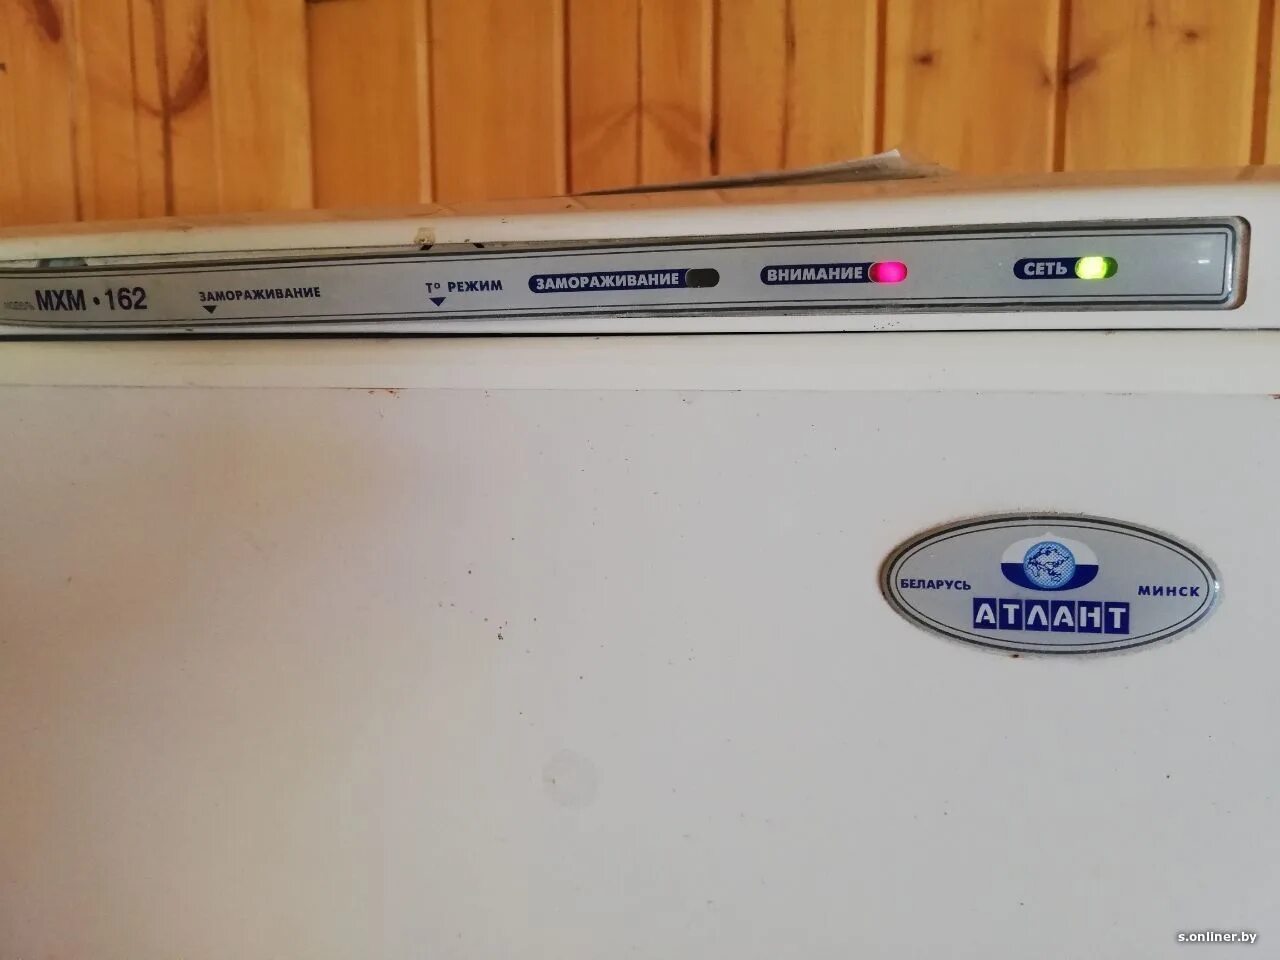 Холодильник Атлант двухкамерный 4410 индикаторы. Холодильник Атлант 2 Compressors индикаторы на панели. Панель управления холодильника Атлант 2 компрессора. Атлант холодильник 2 компрессора панель индикаторов. Морозильная камера внимание